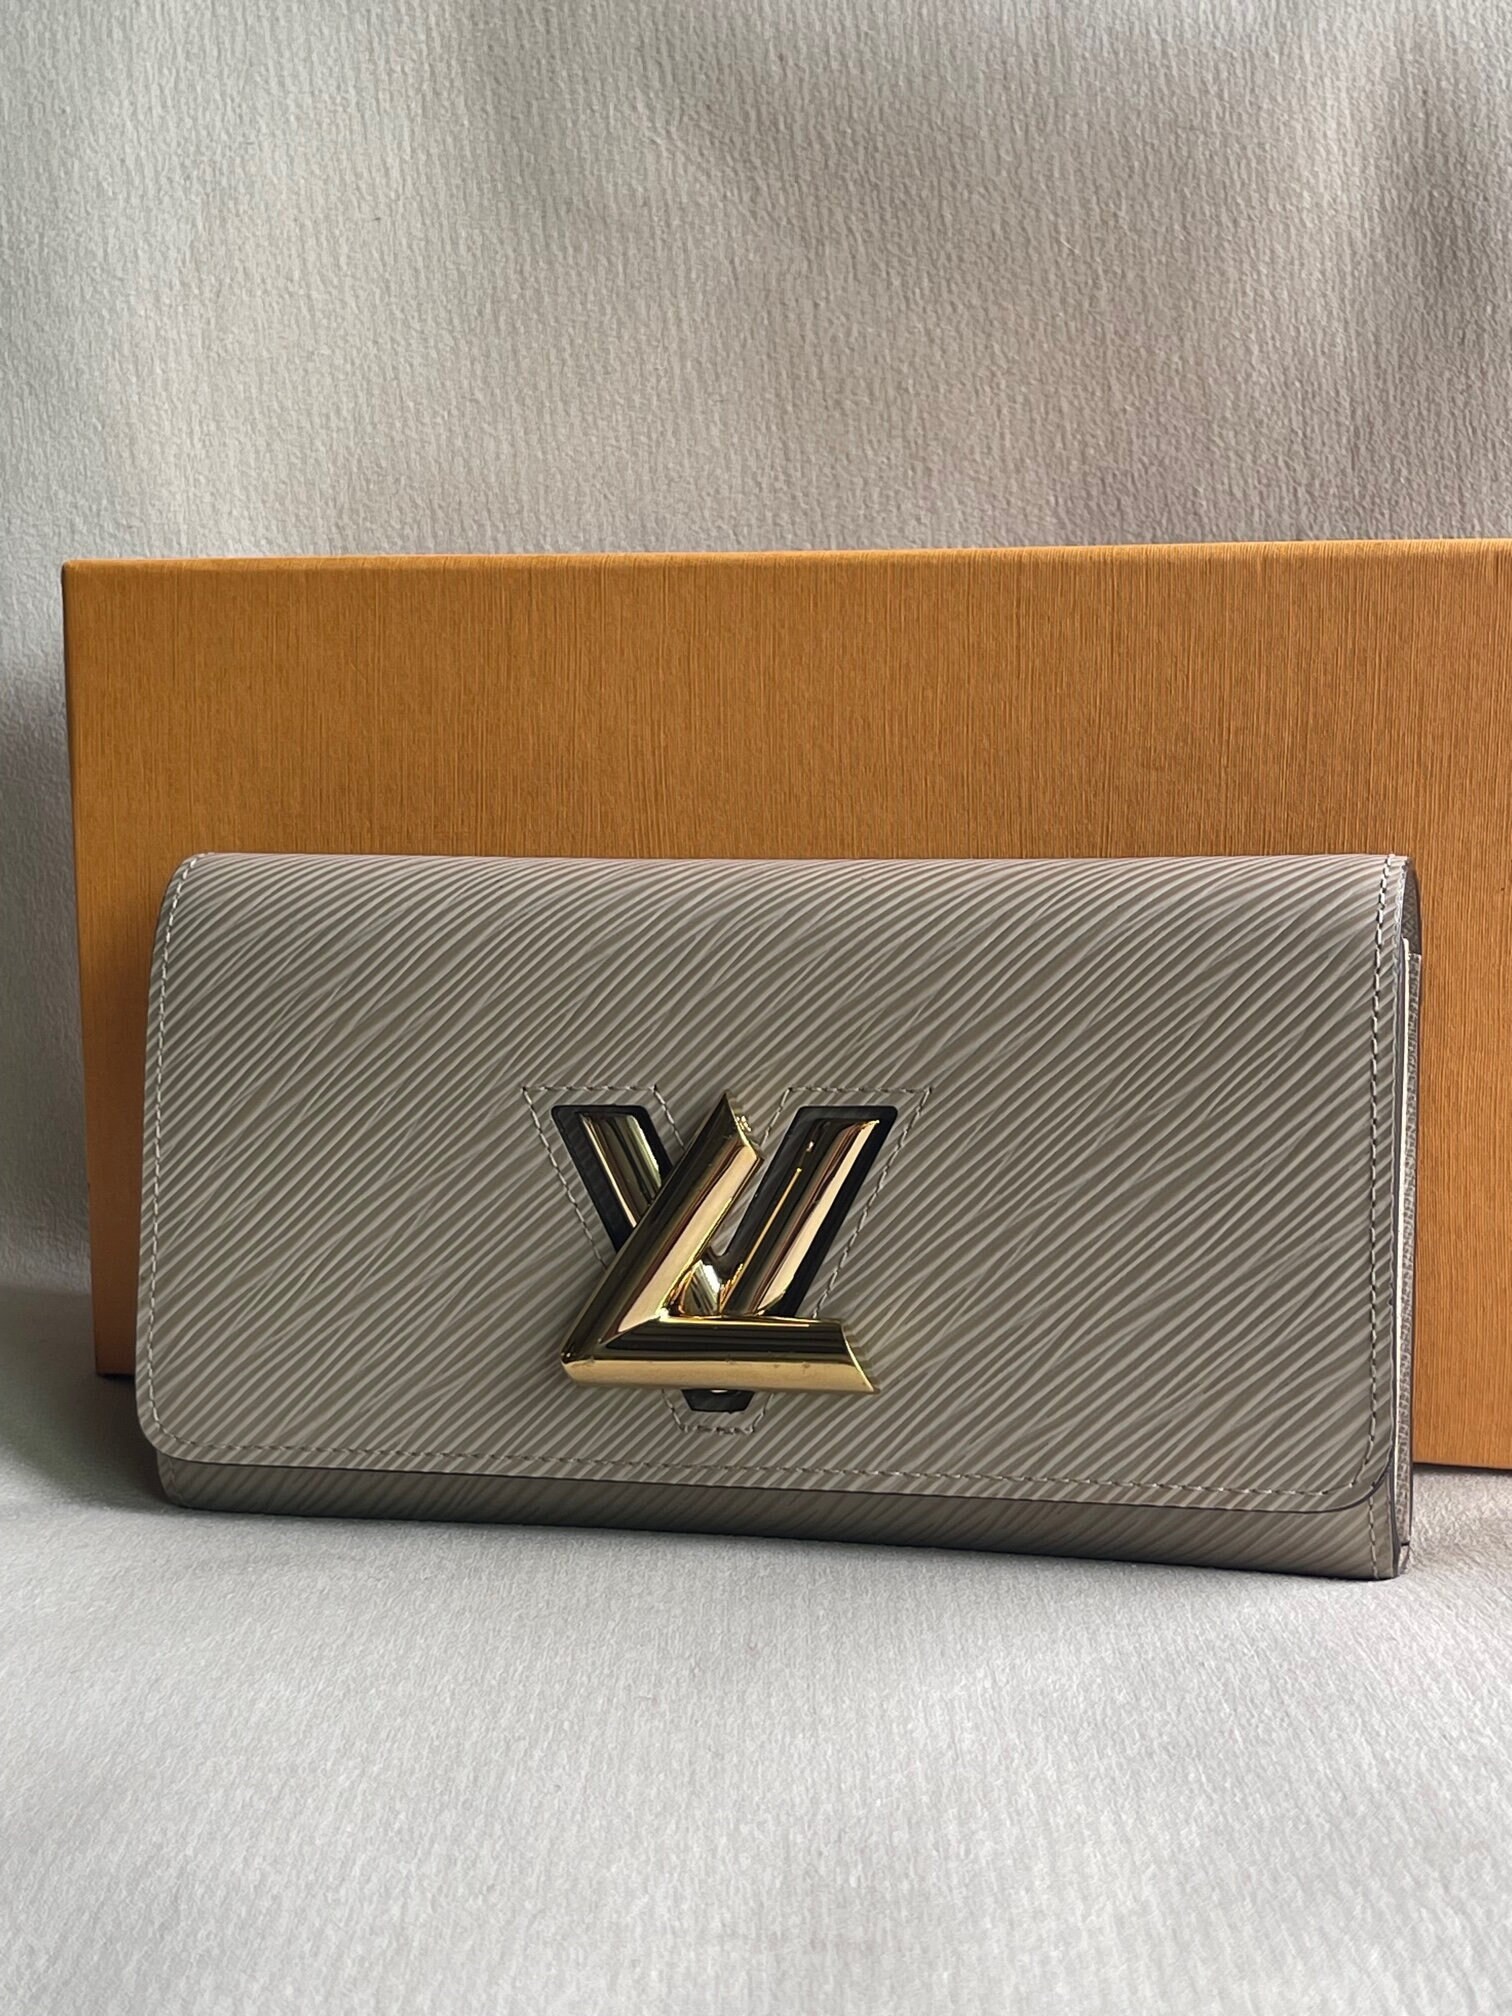 Louis Vuitton lv money clip  Leather goodies, Purses and bags, Louis  vuitton